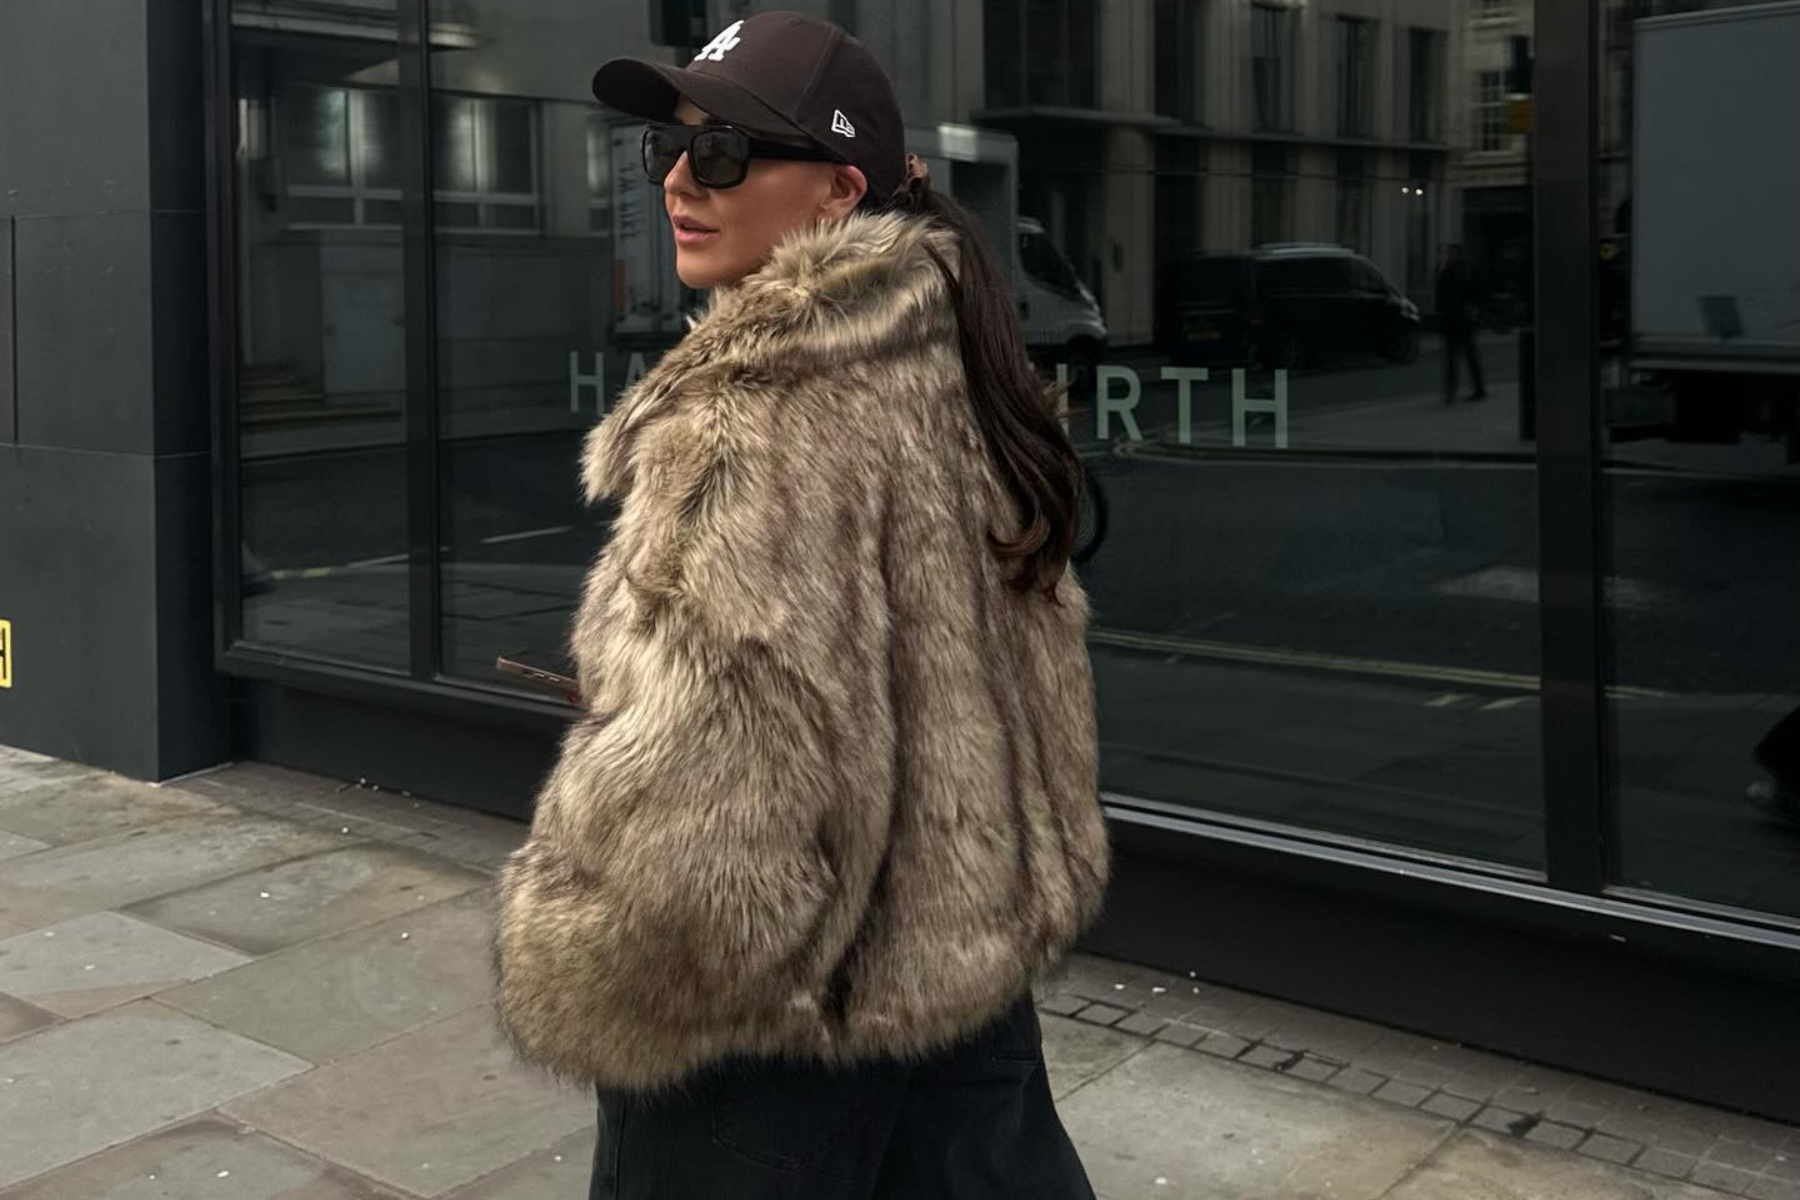 A woman is wearing a fur jacket